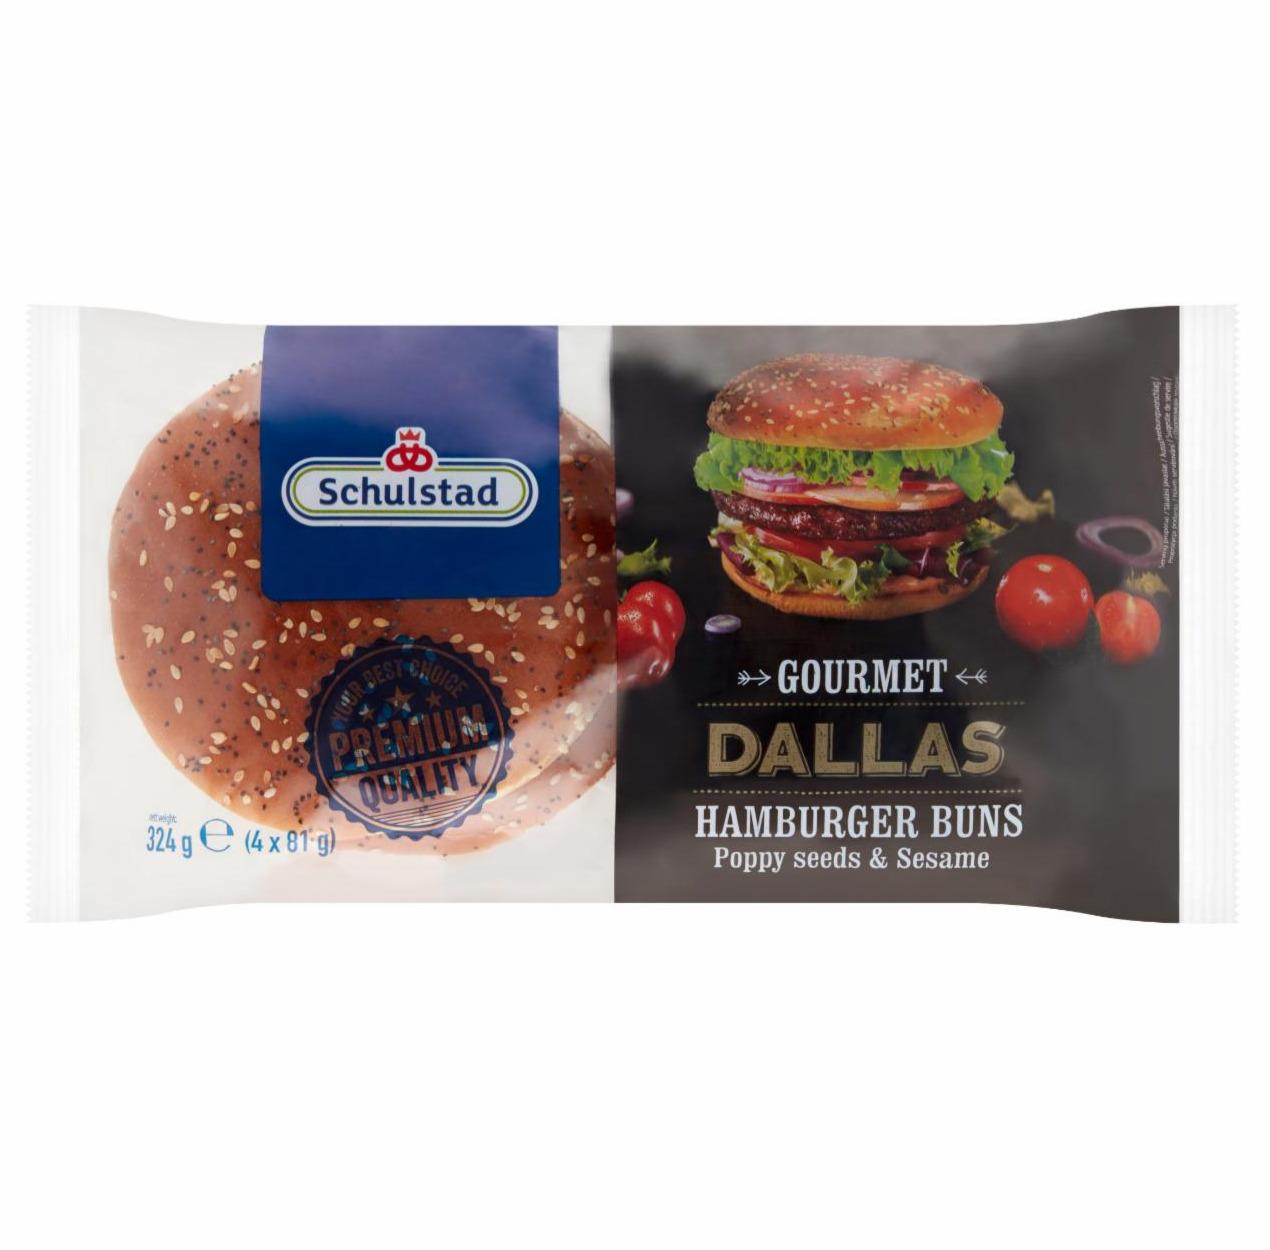 Zdjęcia - Schulstad Gourmet Dallas Bułki pszenne z makiem i nasionami sezamu do hamburgerów 324 g (4 x 81 g)